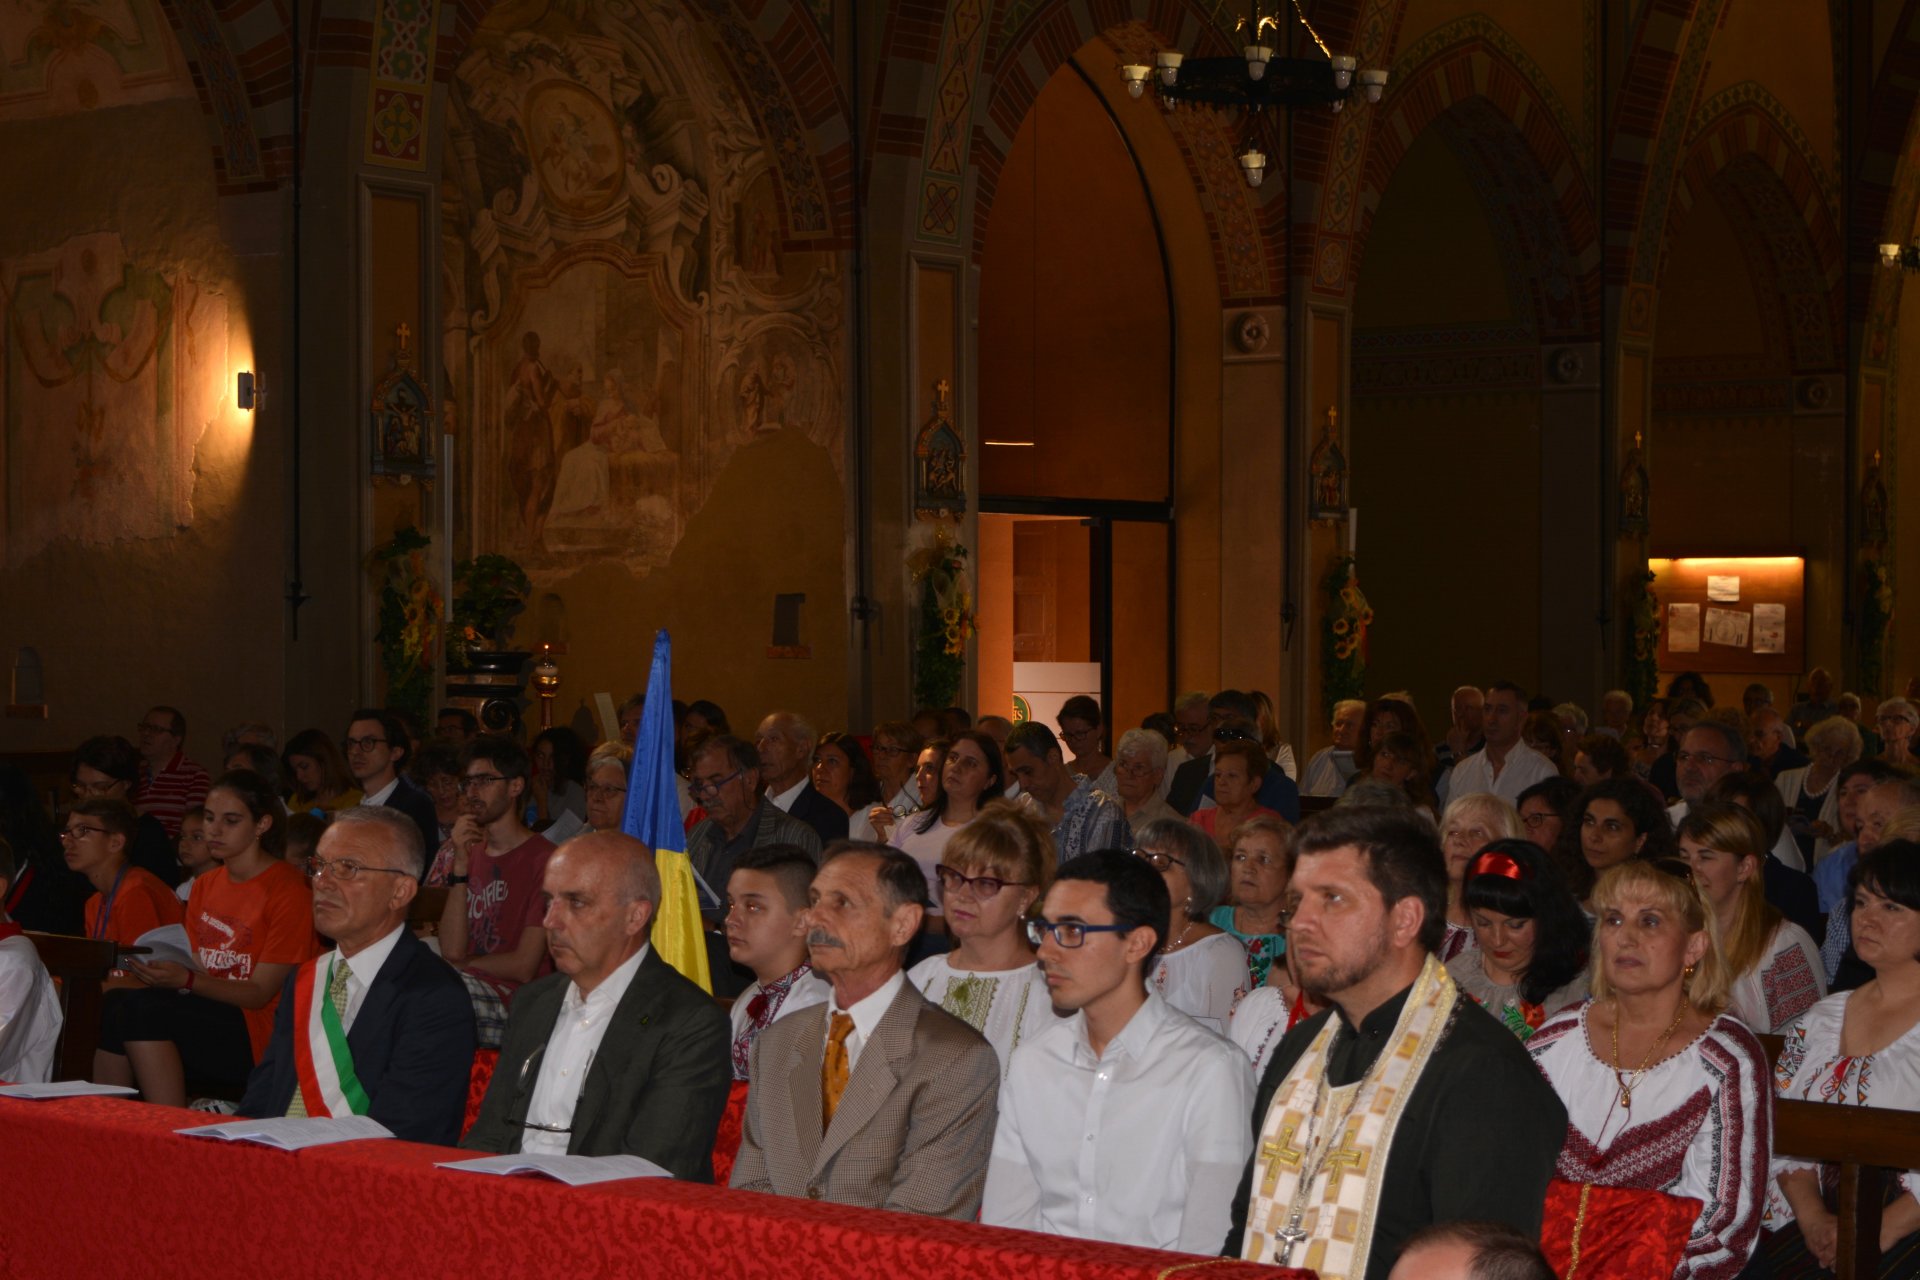 Melzo arcivescovo Mario Delpini in visita chiesa Sant'Alessandro per benedire altare